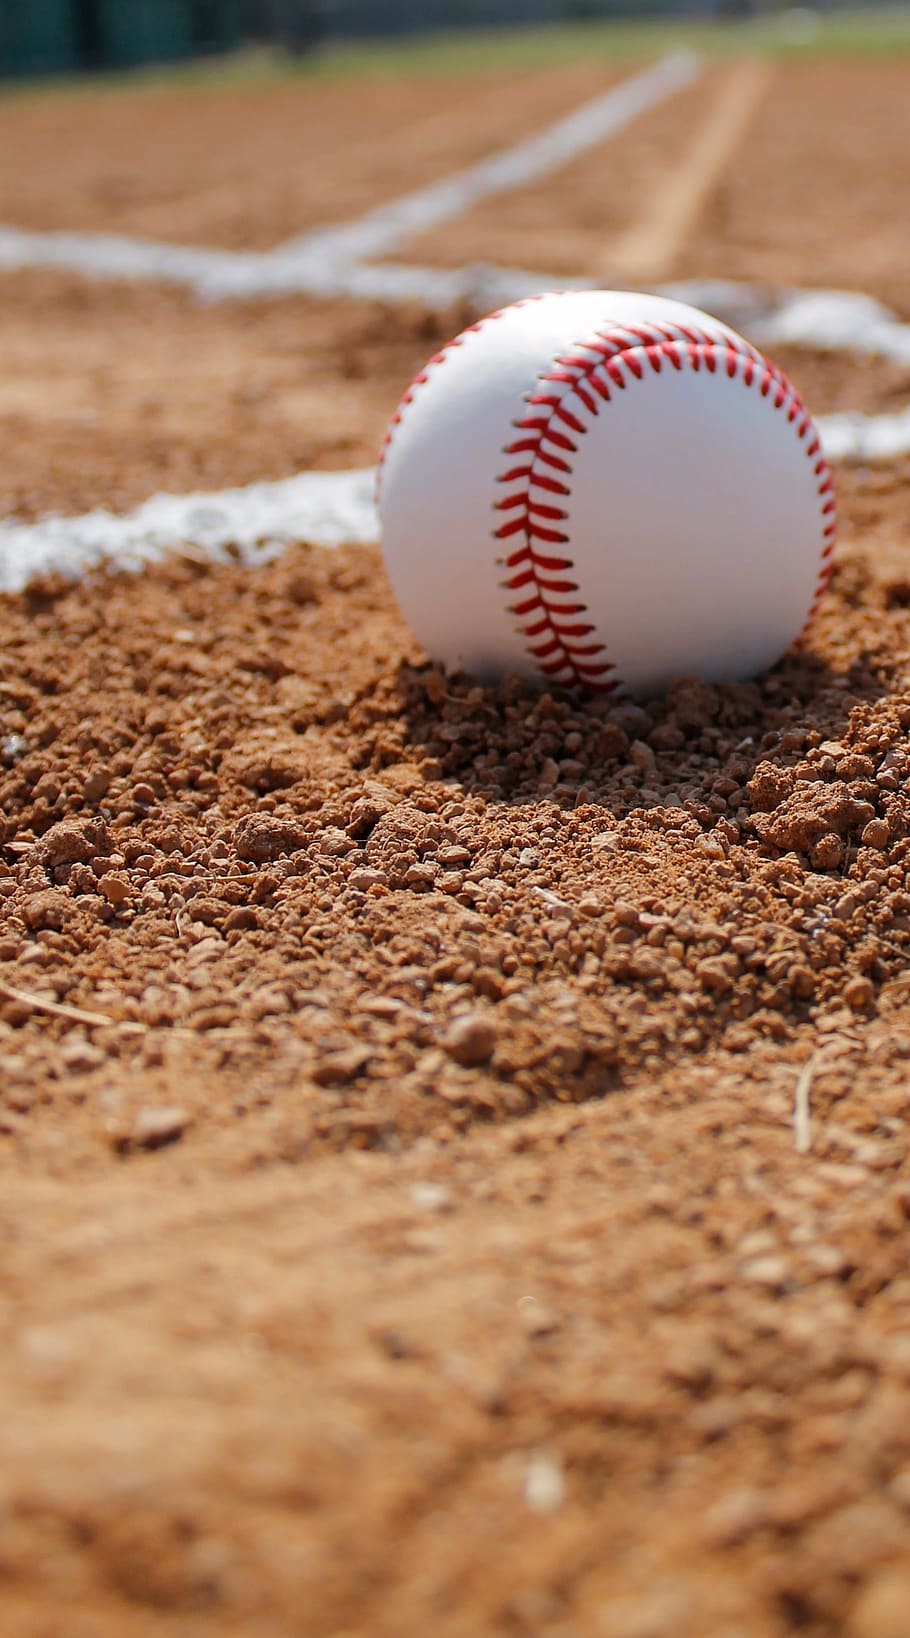 white, baseball, field, ball, gravel, baseball - Ball, sport, baseball - Sport, baseball Diamond, infield